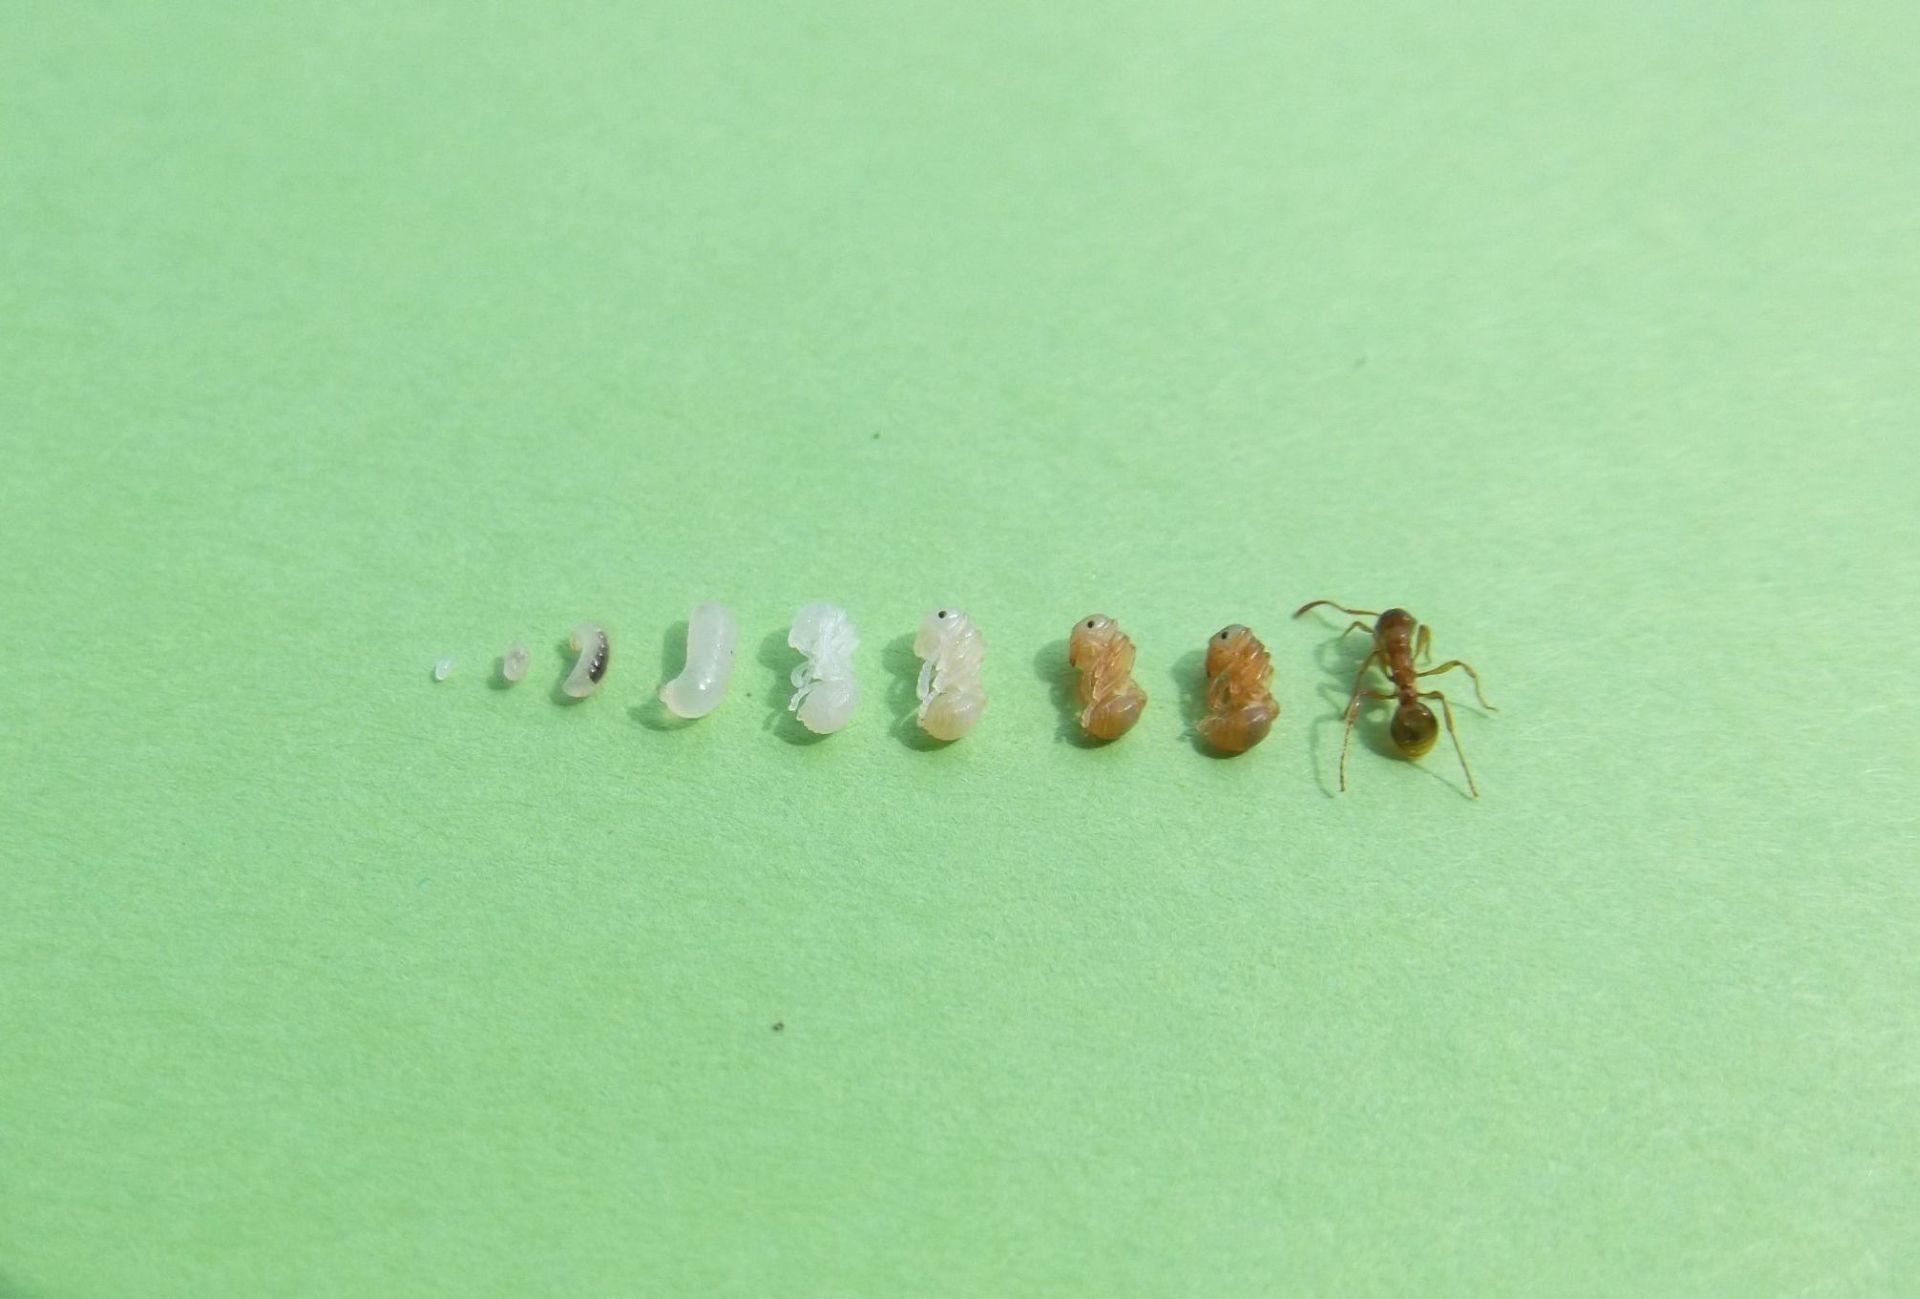 Cykl rozwojowy mrówek 